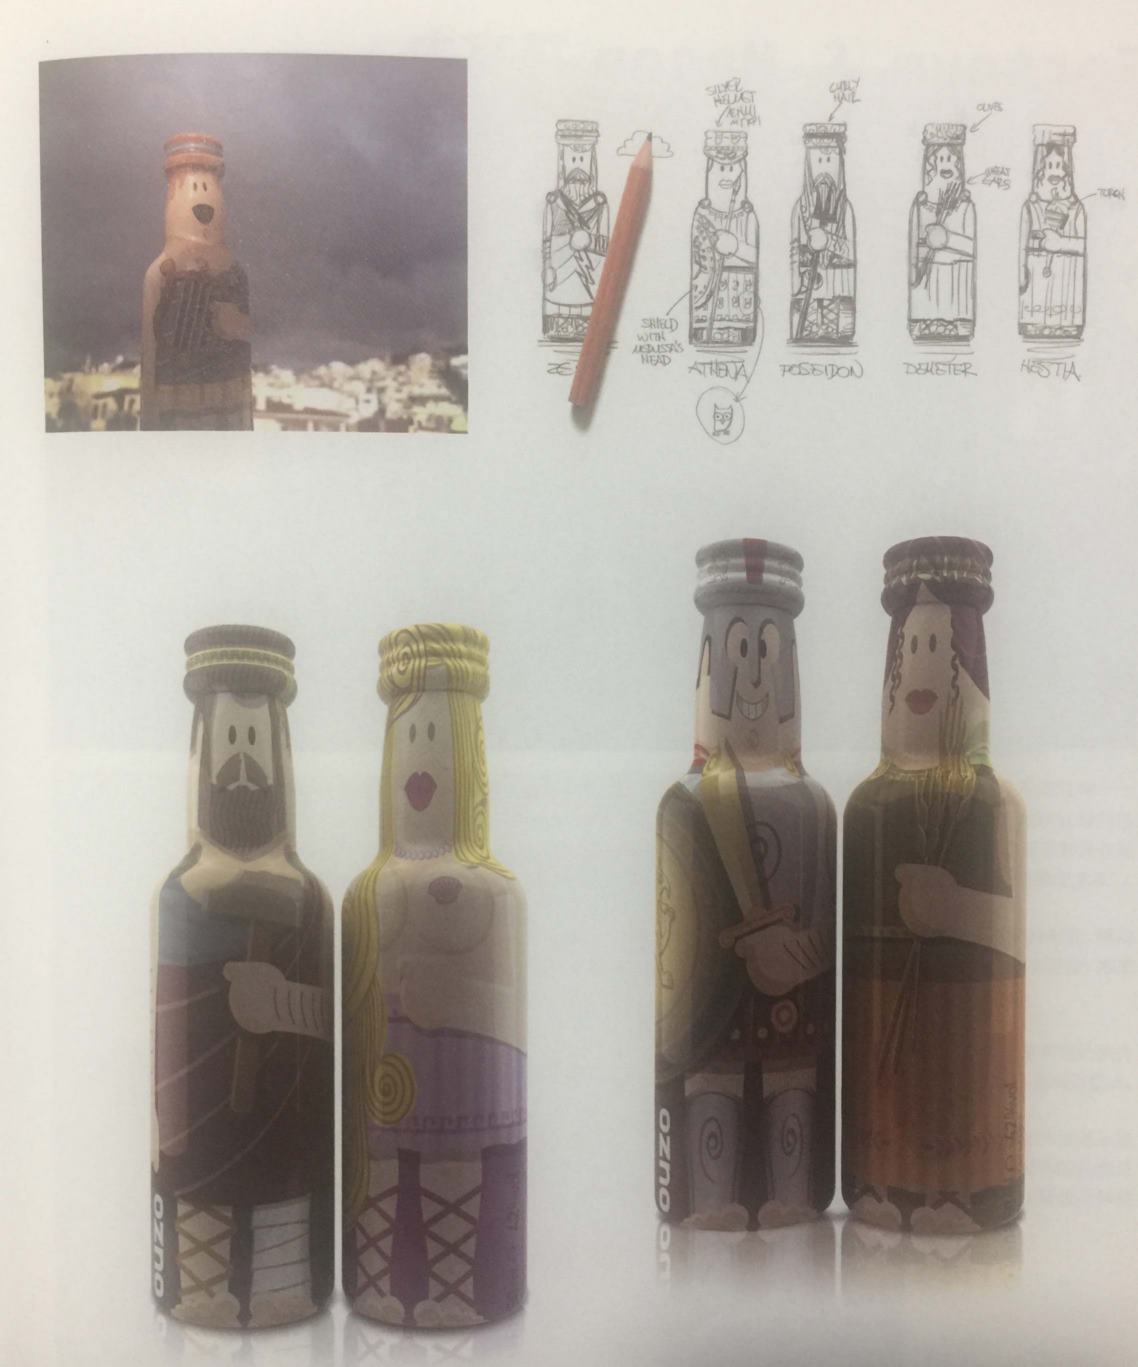 使用希腊元素的酒瓶包装设计 